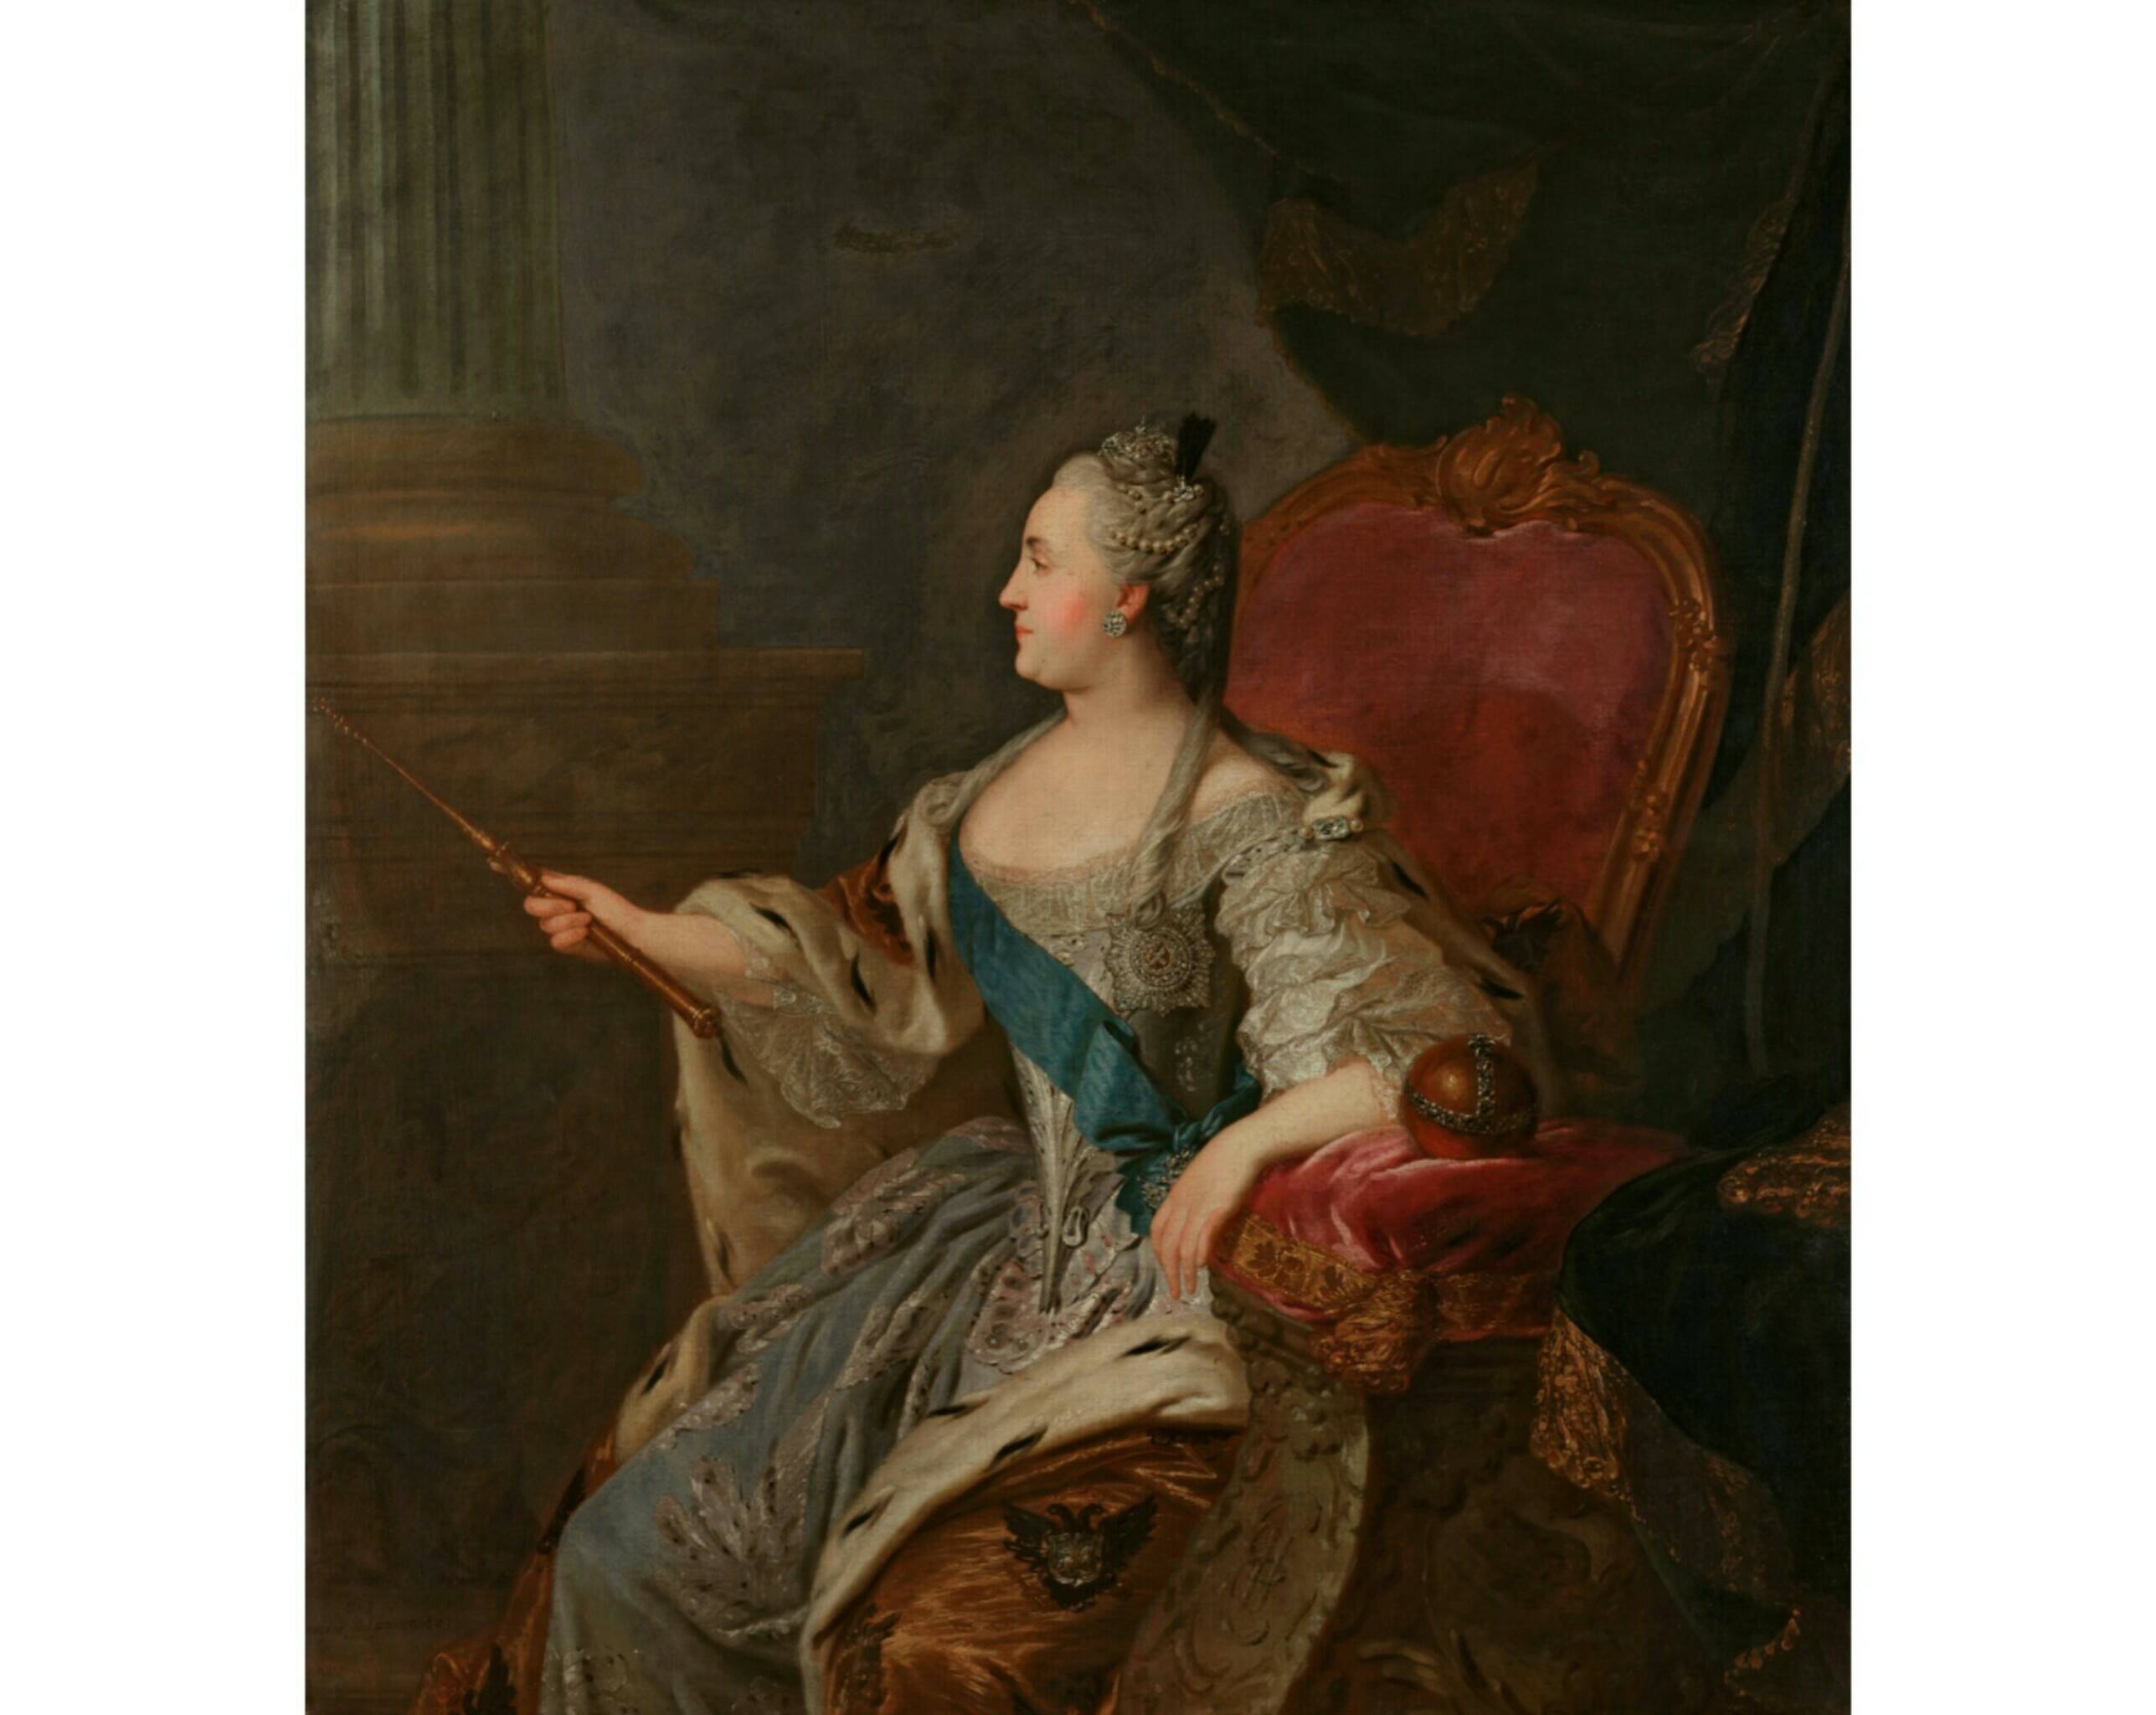 Ф.С. Рокотов «Портрет Екатерины II», 1763 год. Из собрания Третьяковской галереи